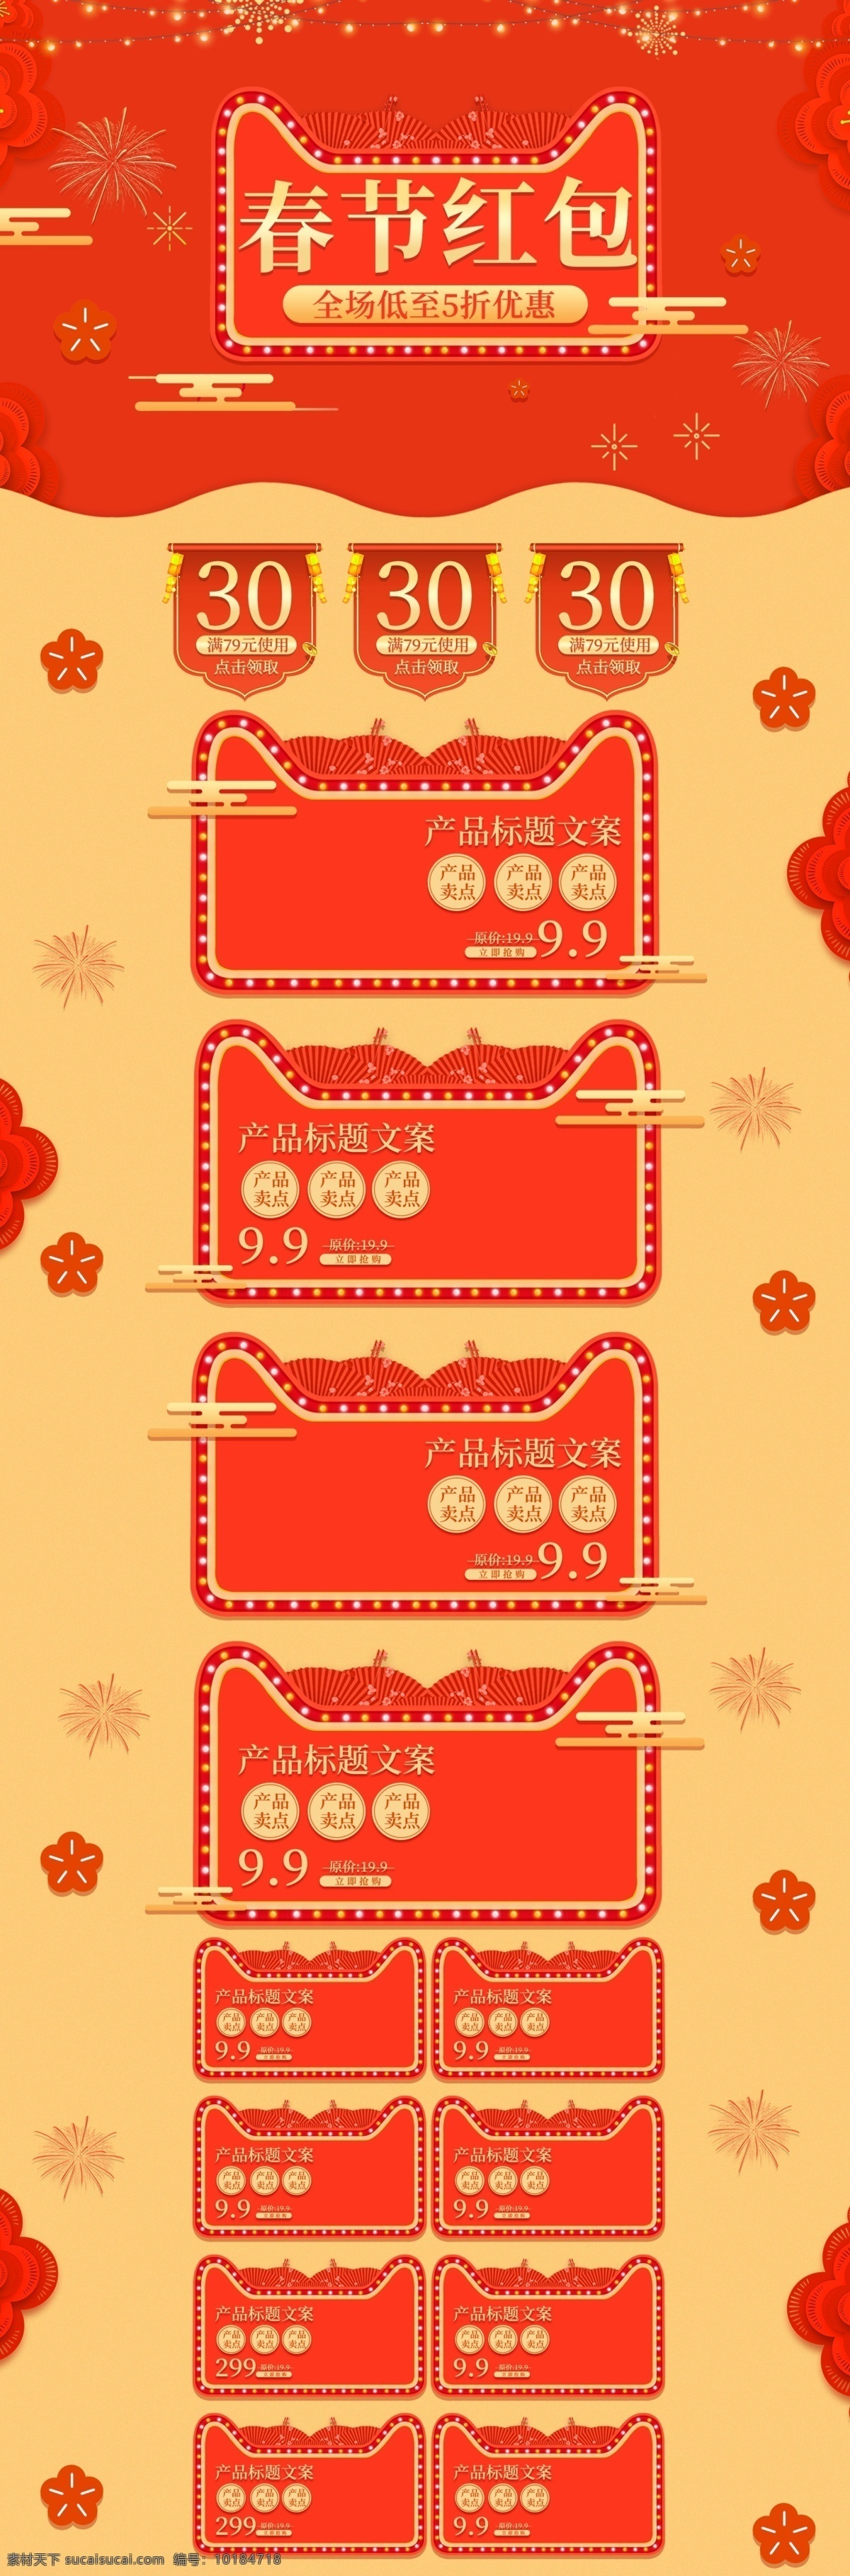 珊瑚 红 橘红 新年 春节 红包 优惠 活动 促销 模板 天猫 珊瑚红 电商 淘宝